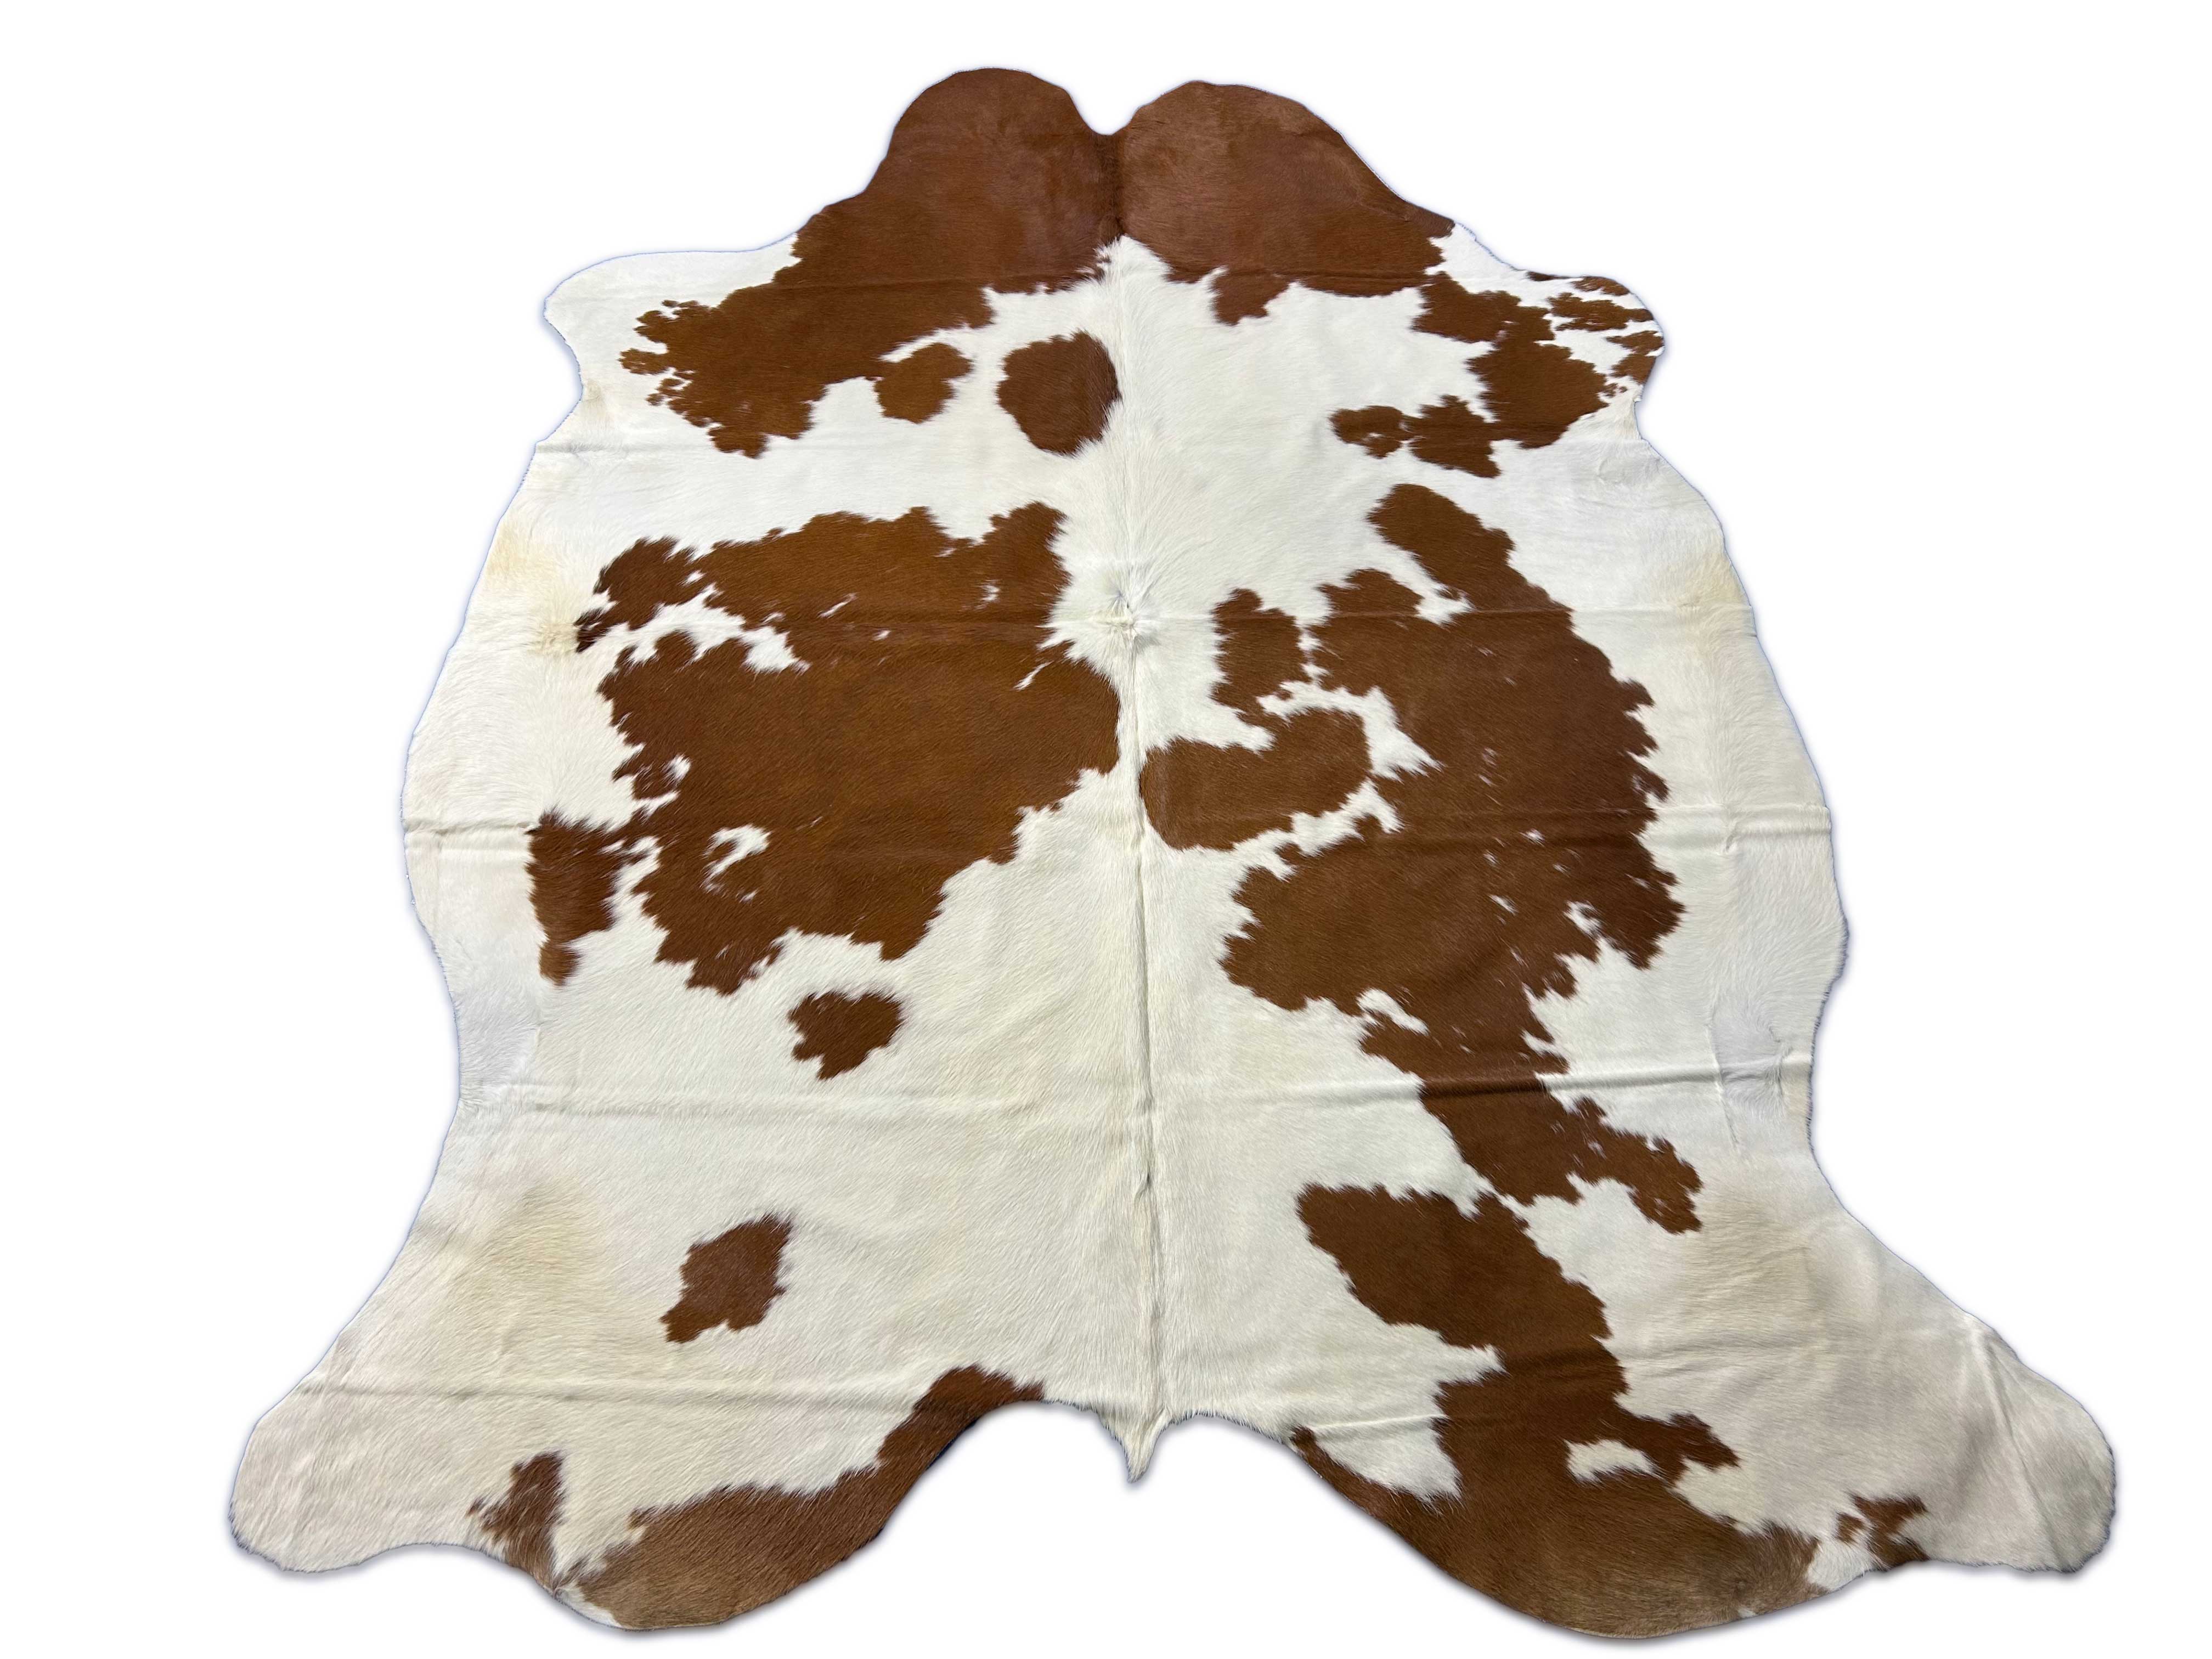 Brown & White Cowhide Rug Size: 7.2x6 feet M-1645